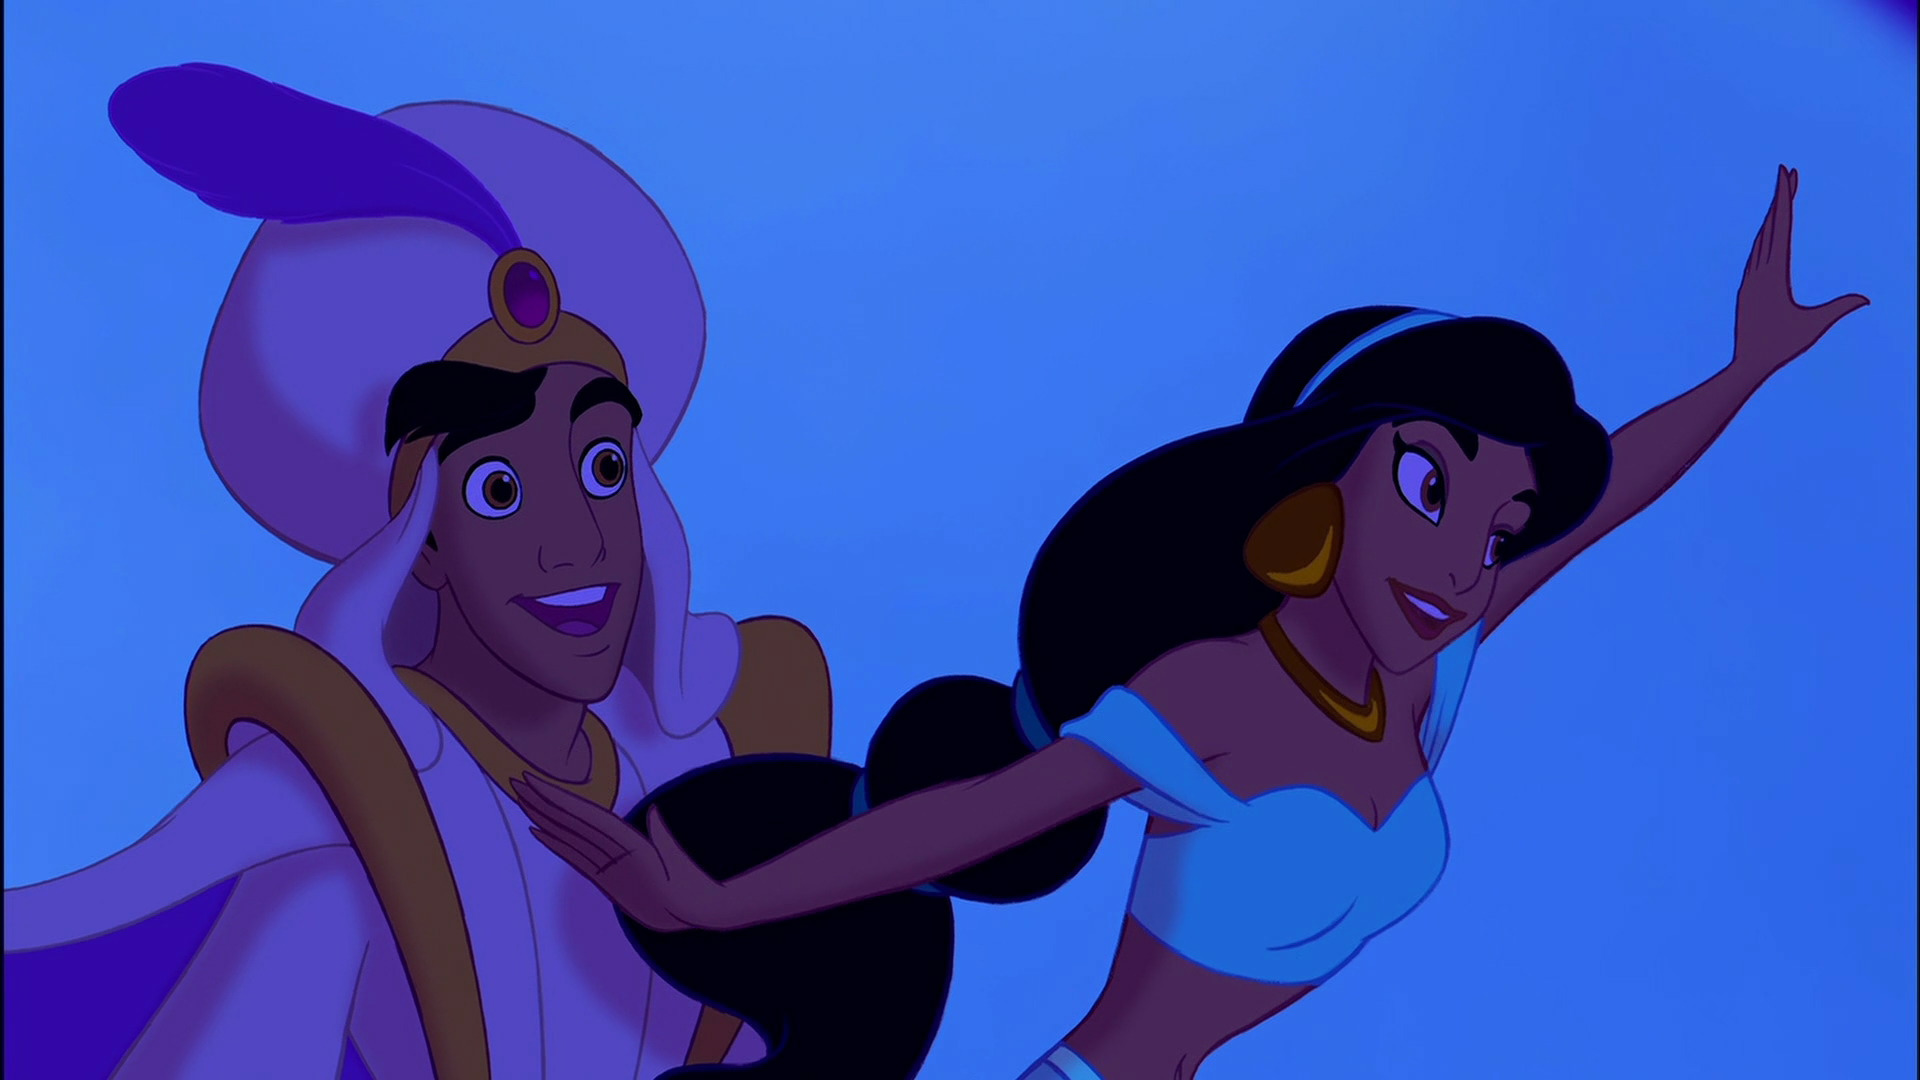 Disney Princess Analysis (Jasmine)